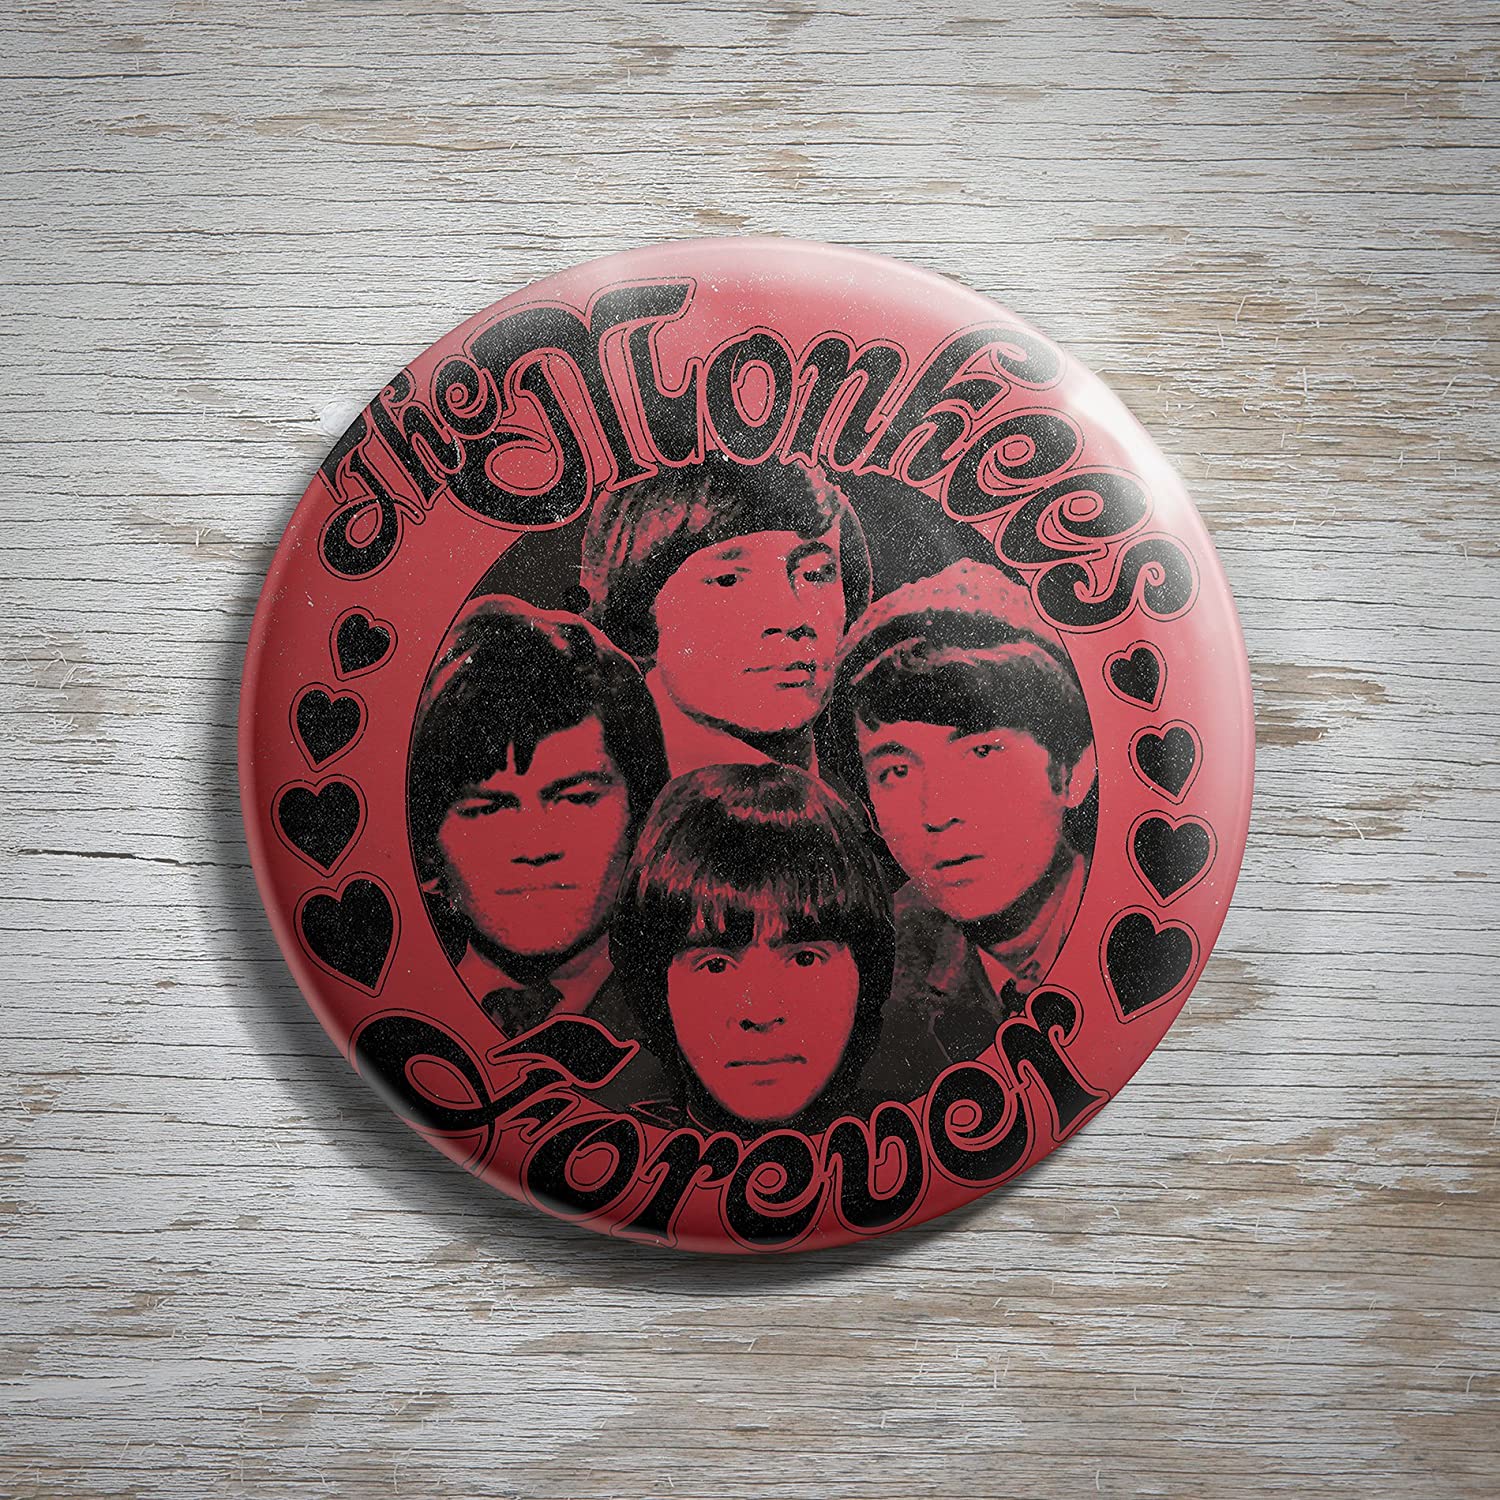 Monkees Forever - Ireland Vinyl